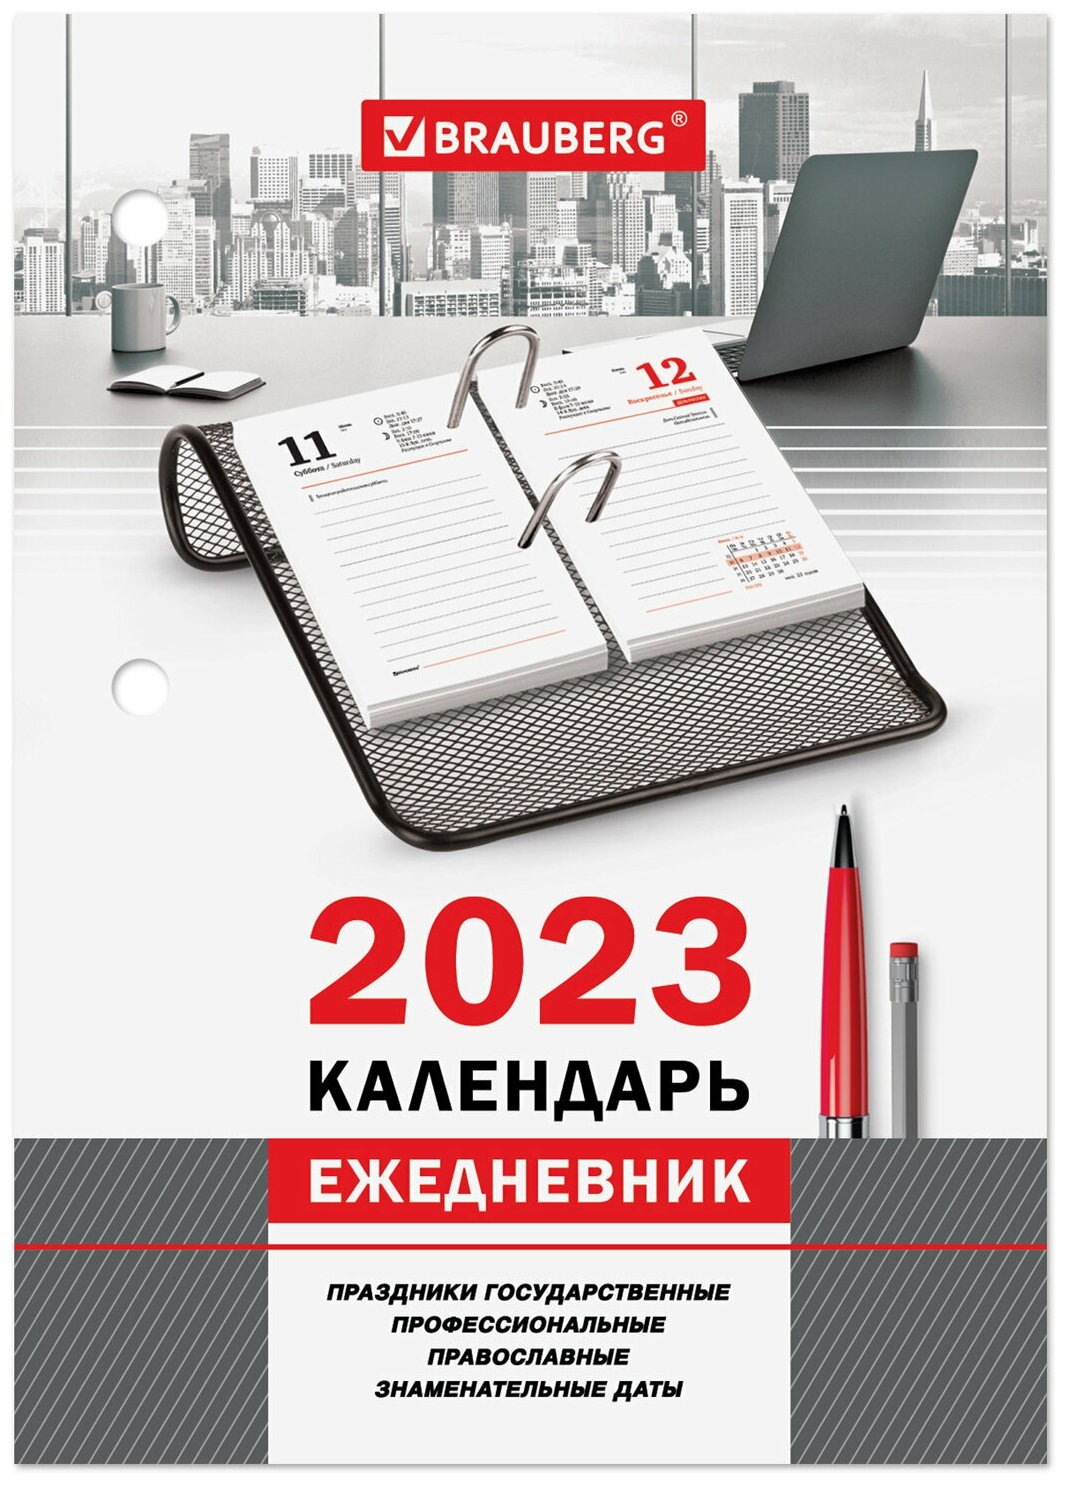 Календарь-ежедневник настольный перекидной 2023 г, 2 шт. — купить в  интернет-магазине по низкой цене на Яндекс Маркете